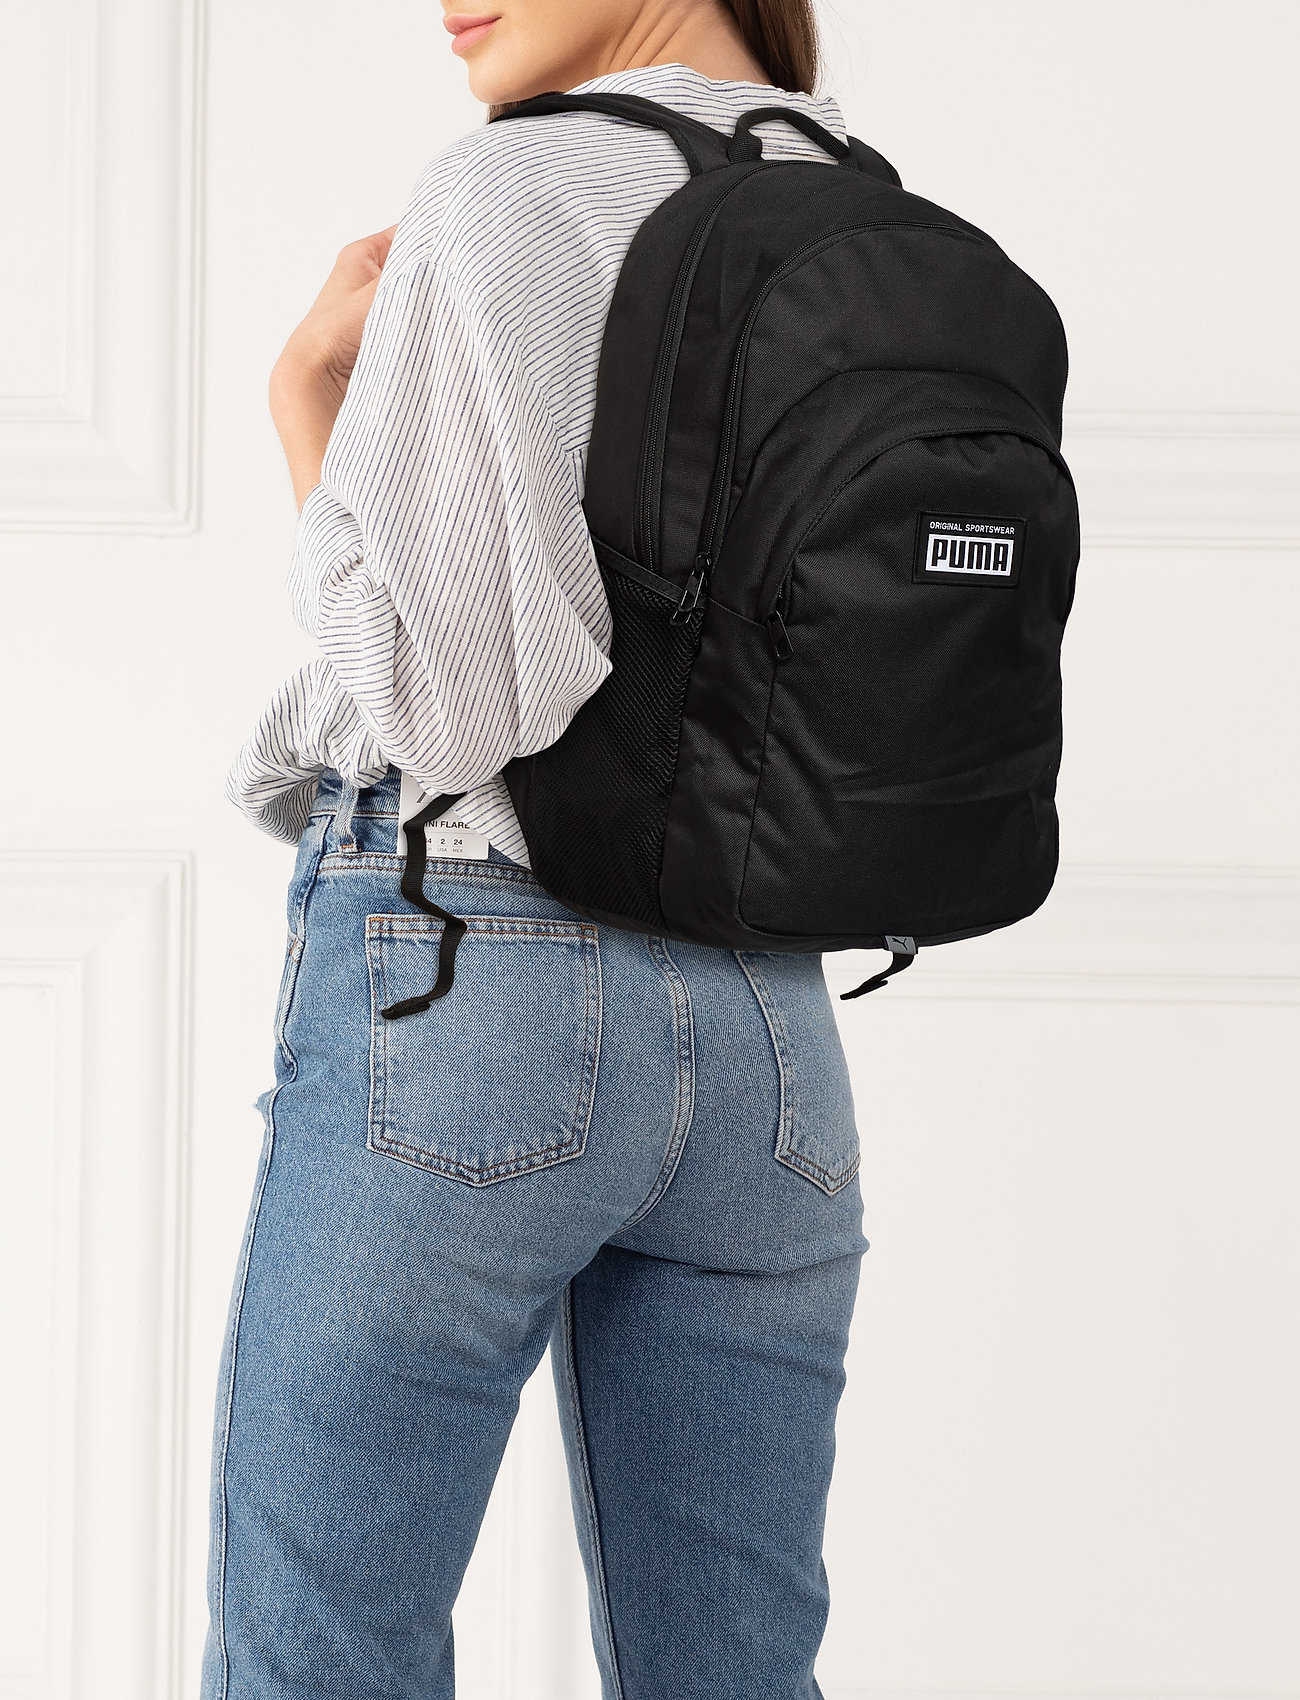 puma black backpack